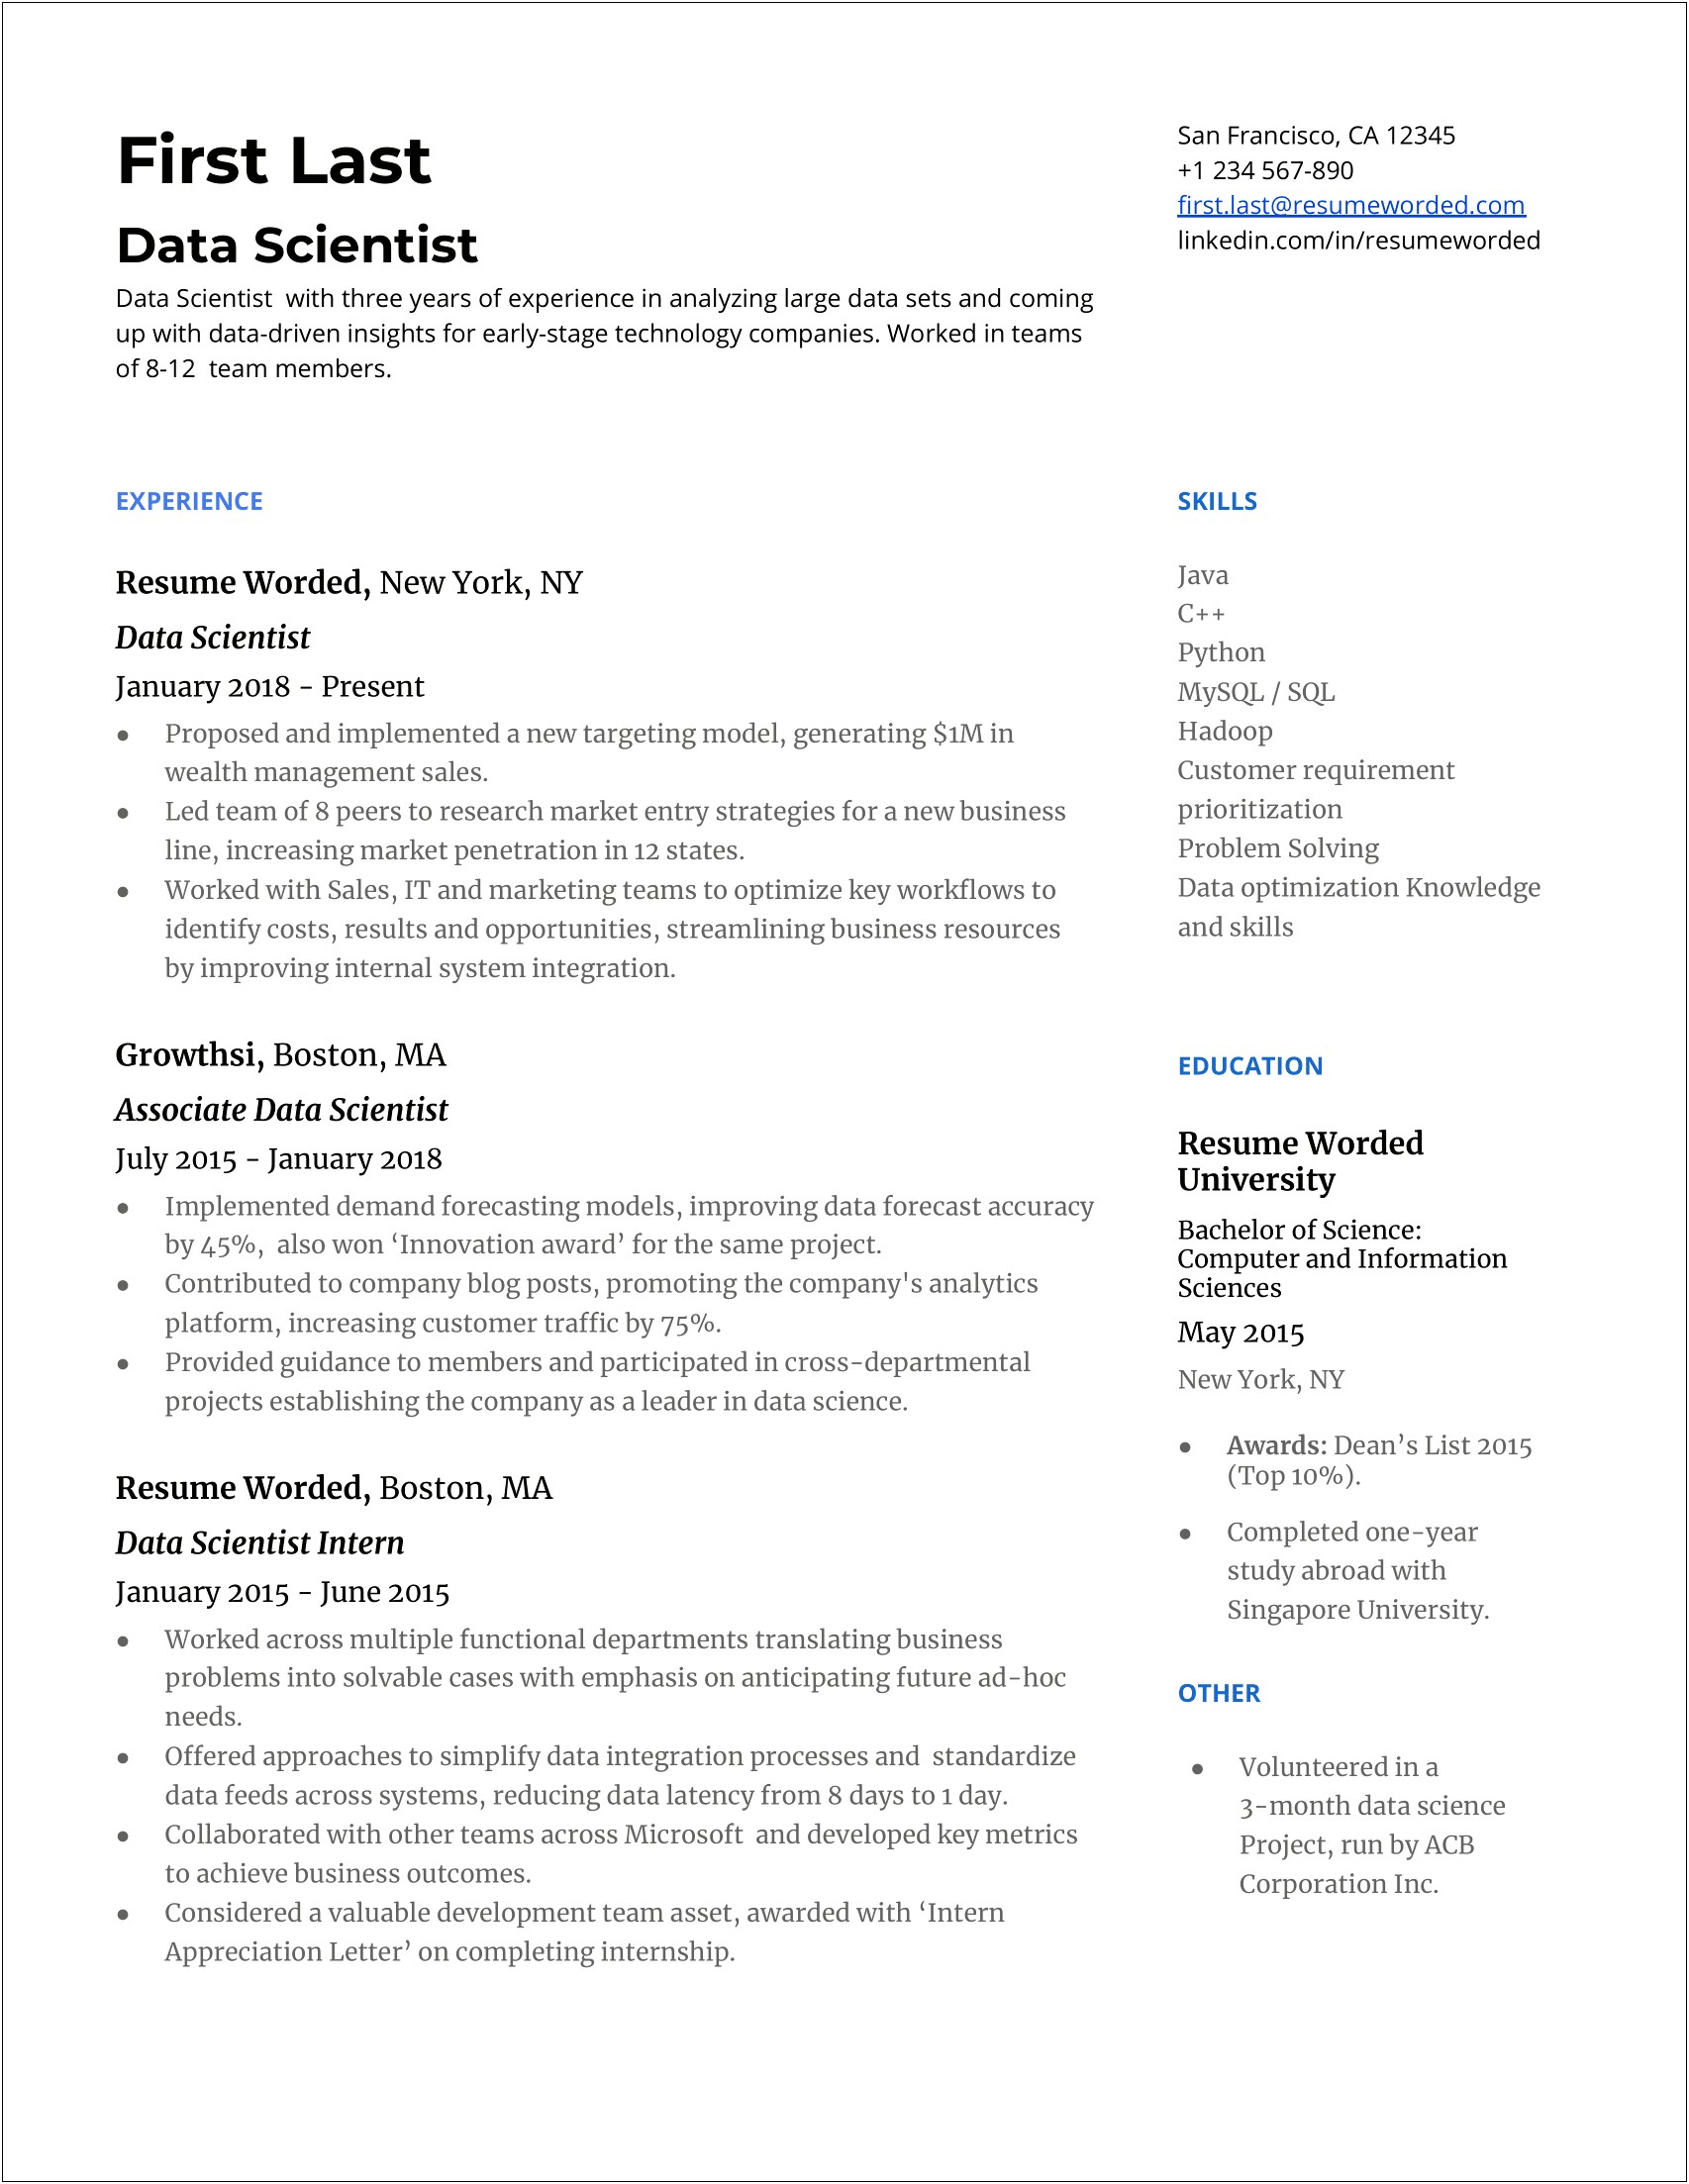 List Of Resume Skills Data Scientist